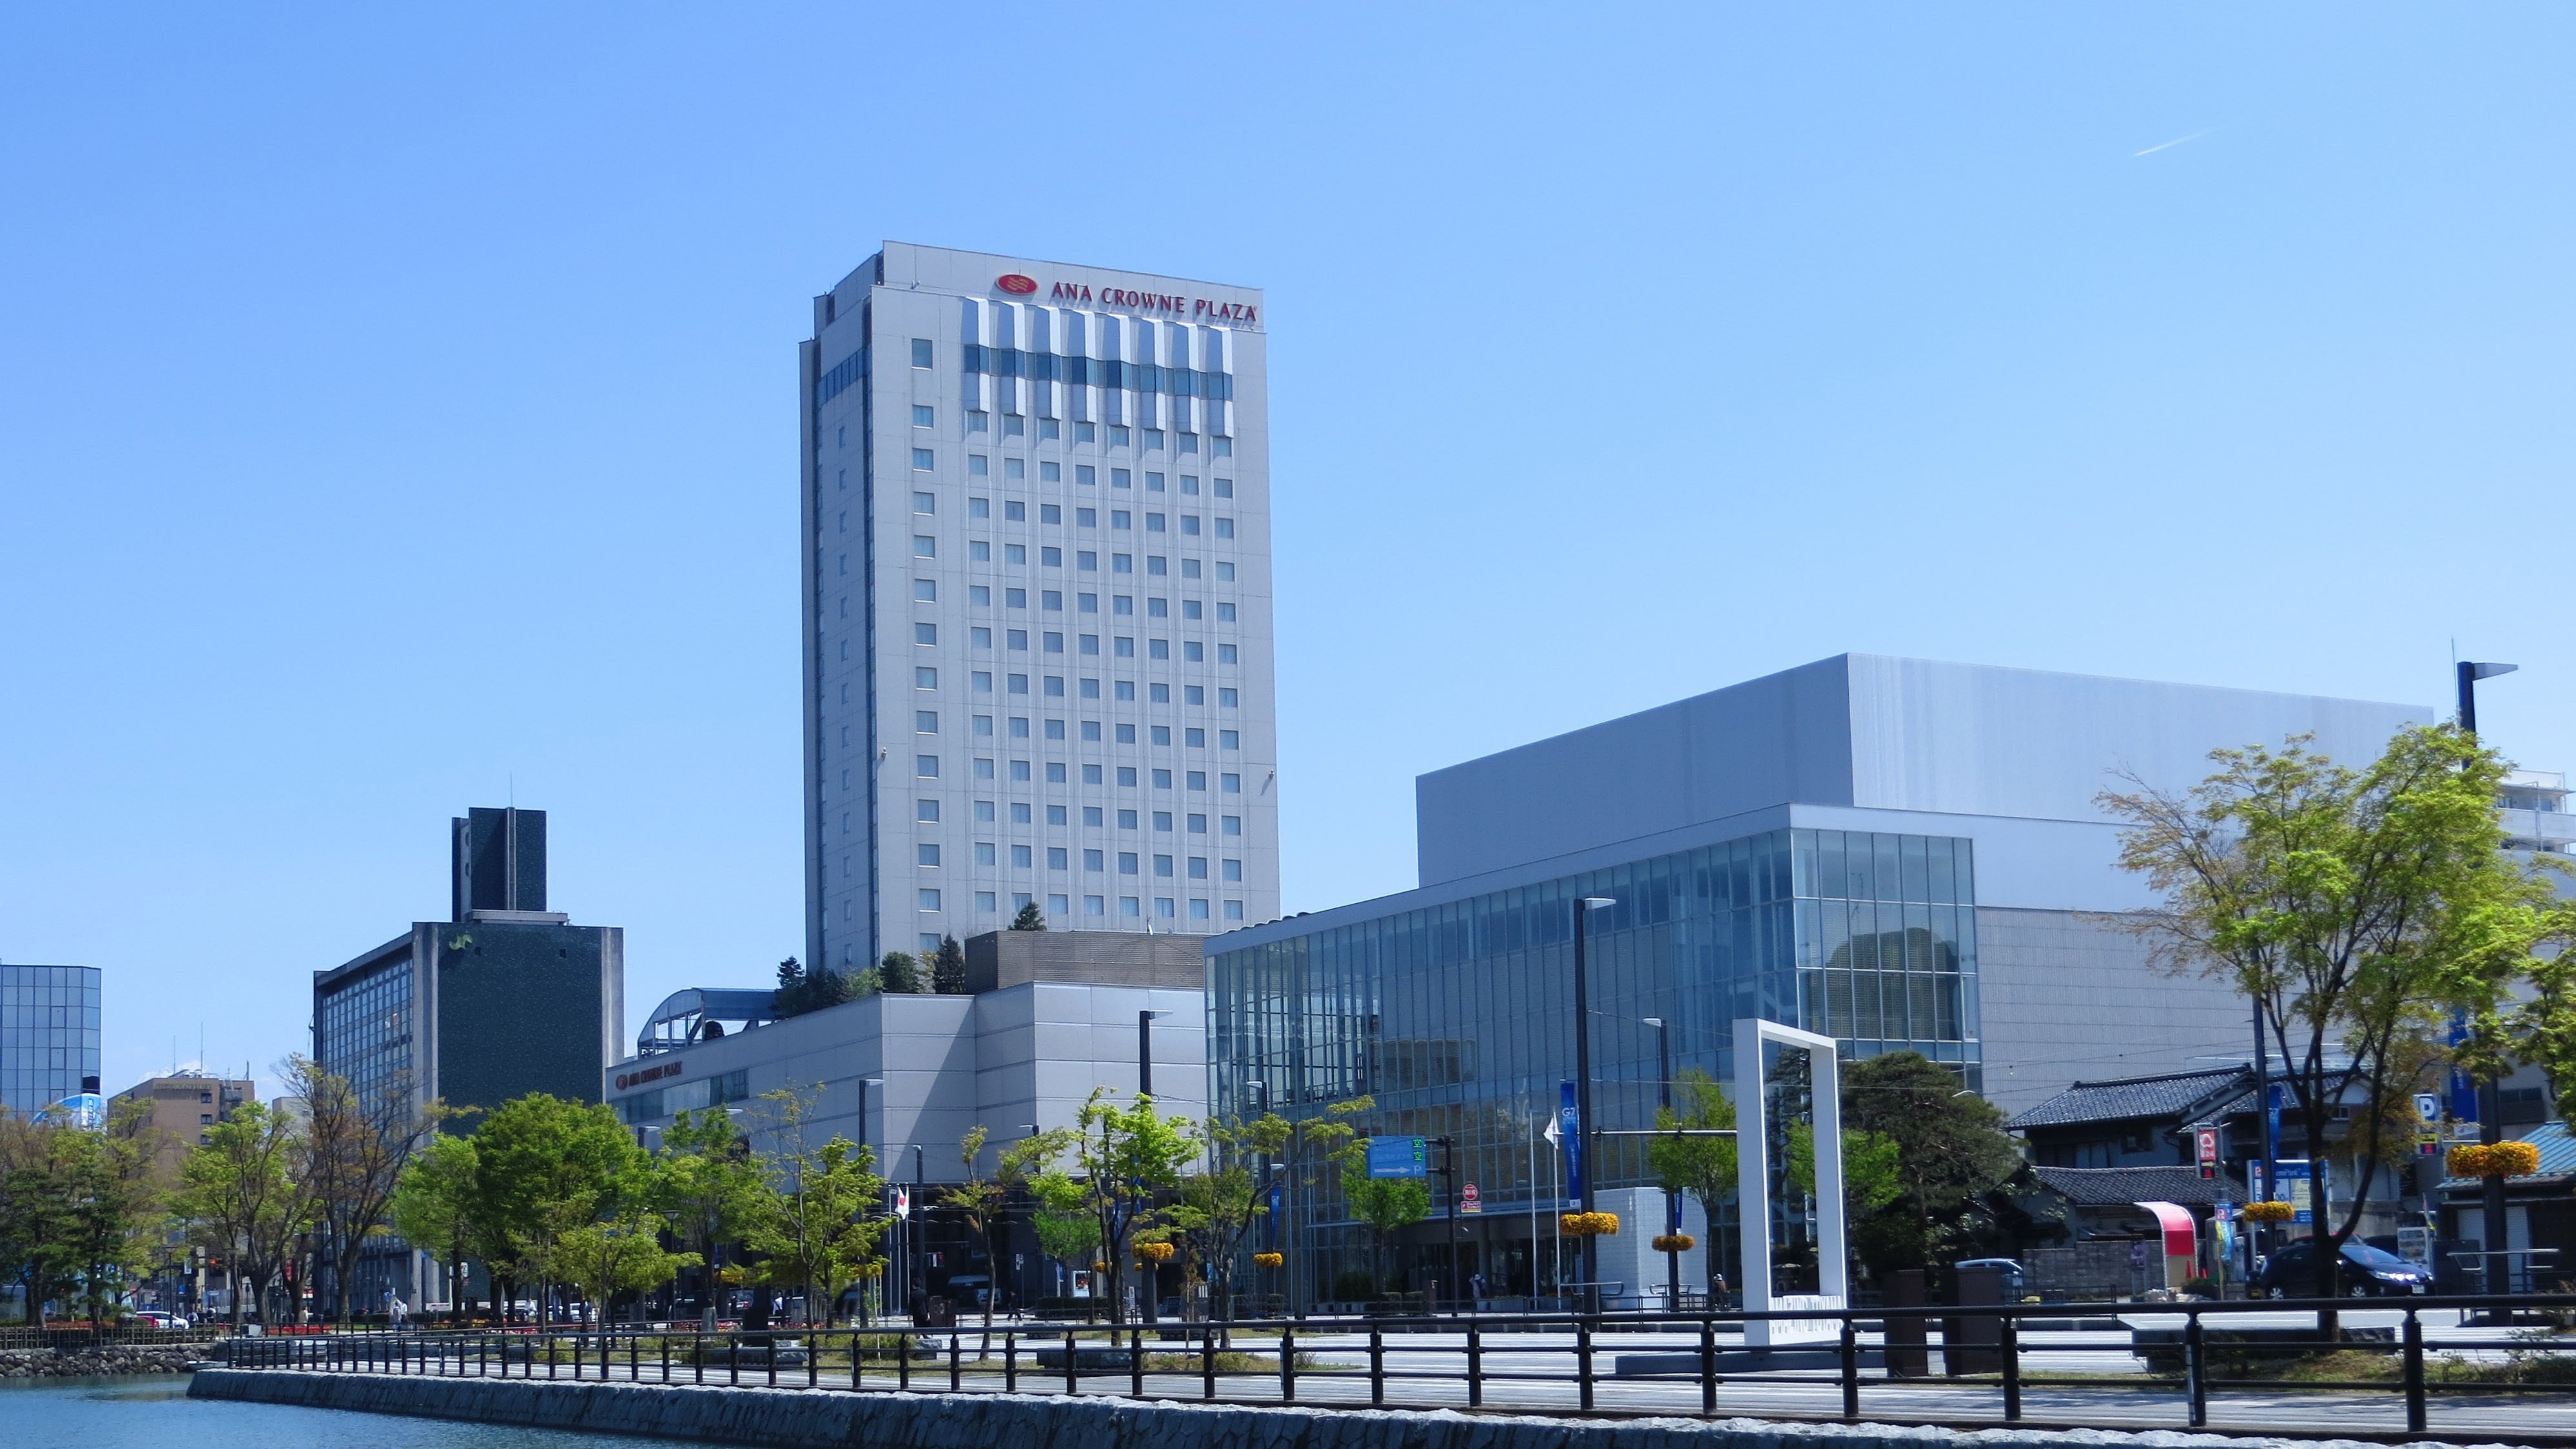 ANA Crowne Plaza Toyama